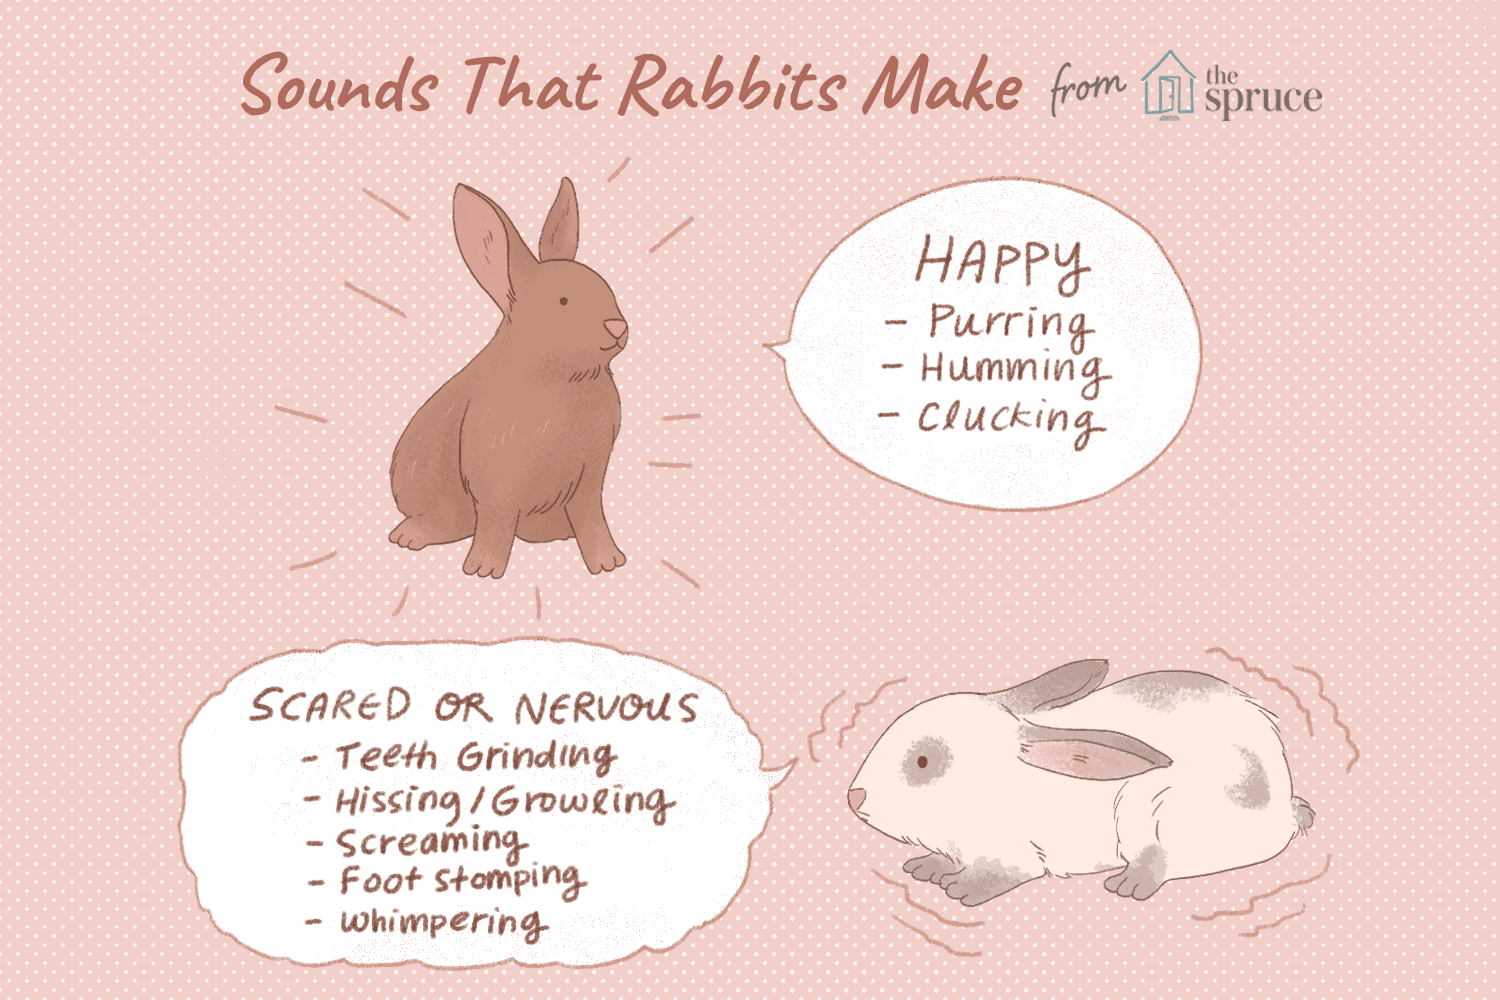 10 sons que os coelhos fazem e o que eles significam